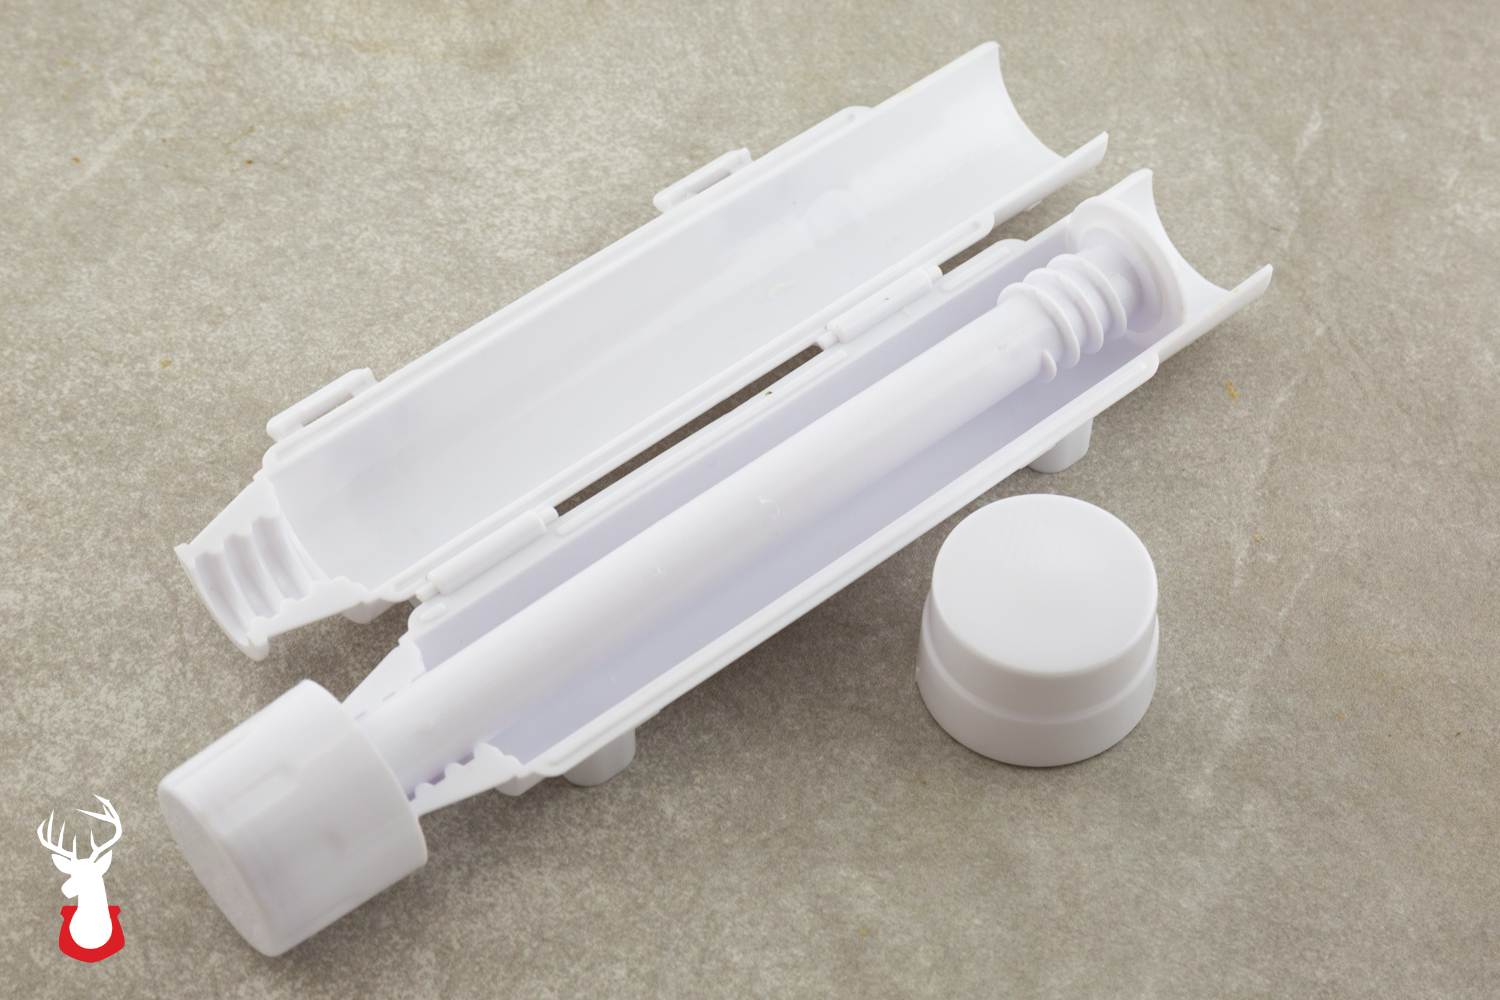 DIY Sushi Bazooka Maker Set Cylinder Japanese Sushi Roller Rice